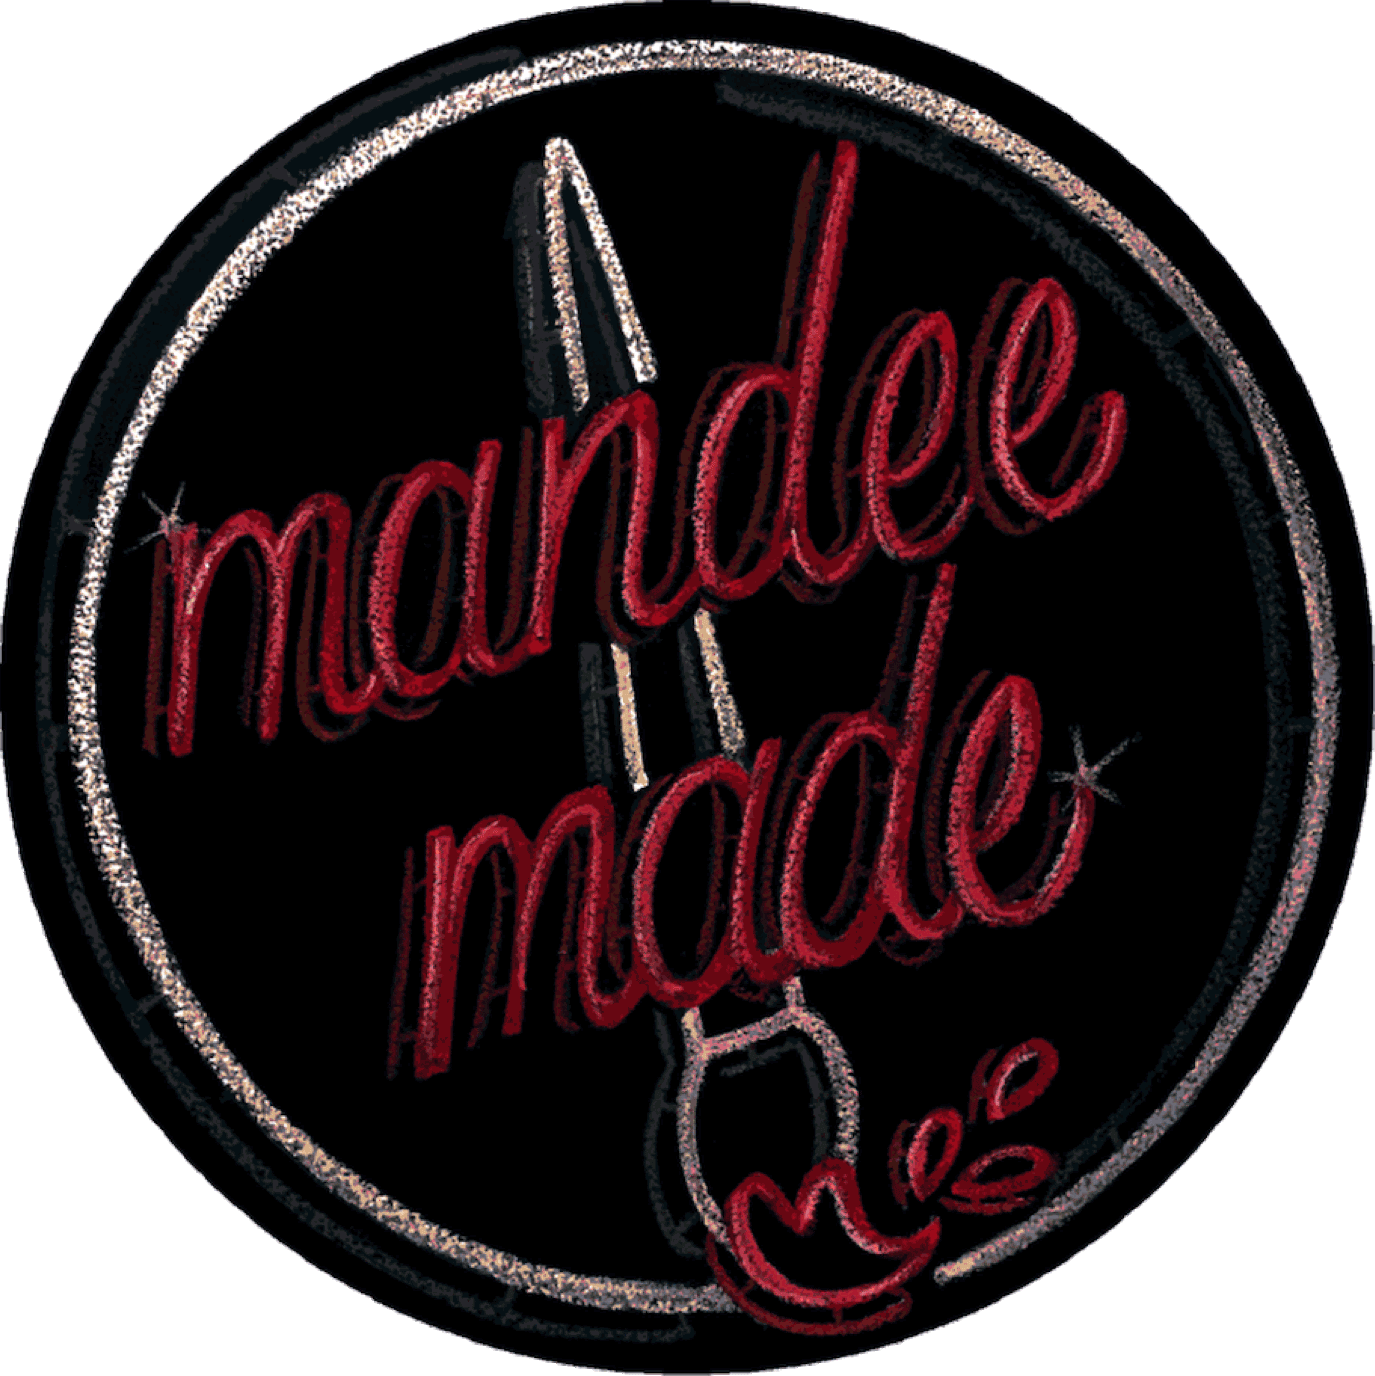 mandee made